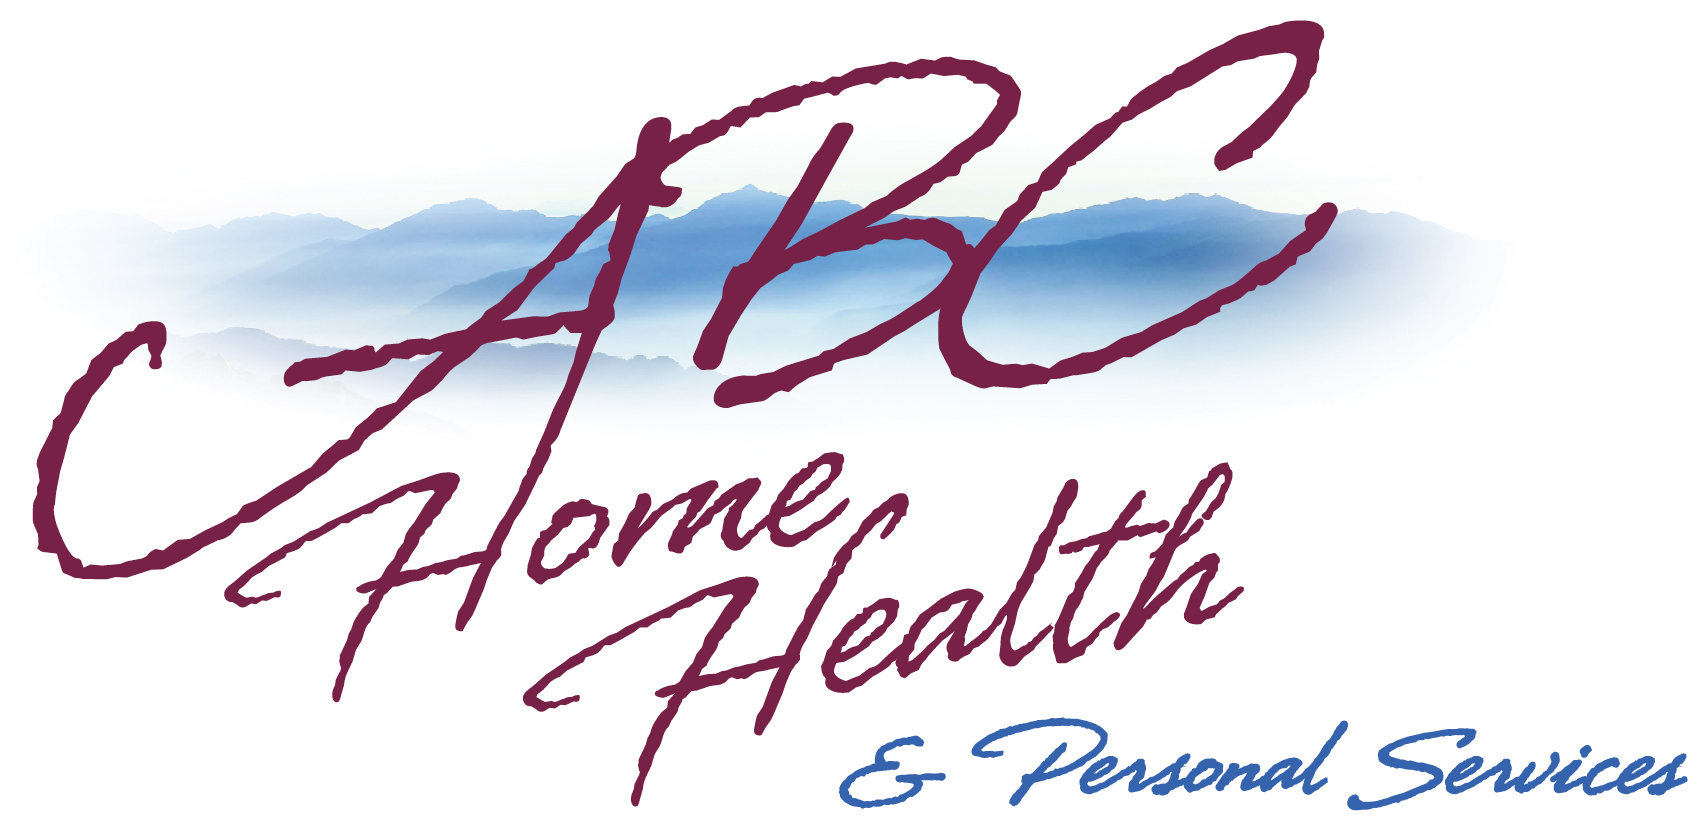 2b. ABC Home Health (Gold)